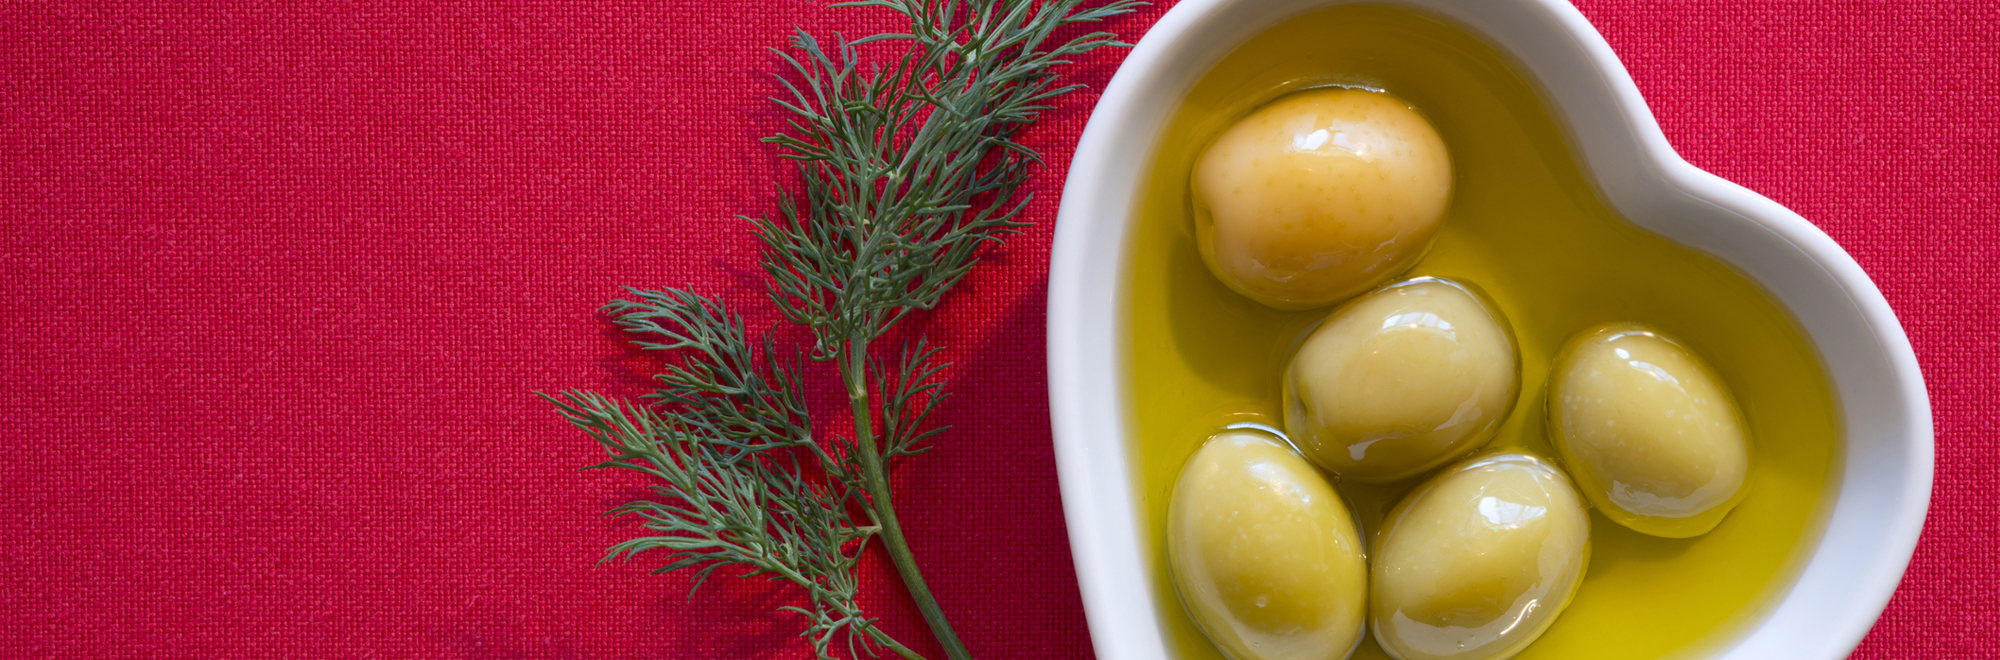 Cómo reducir el colesterol con aceite de oliva